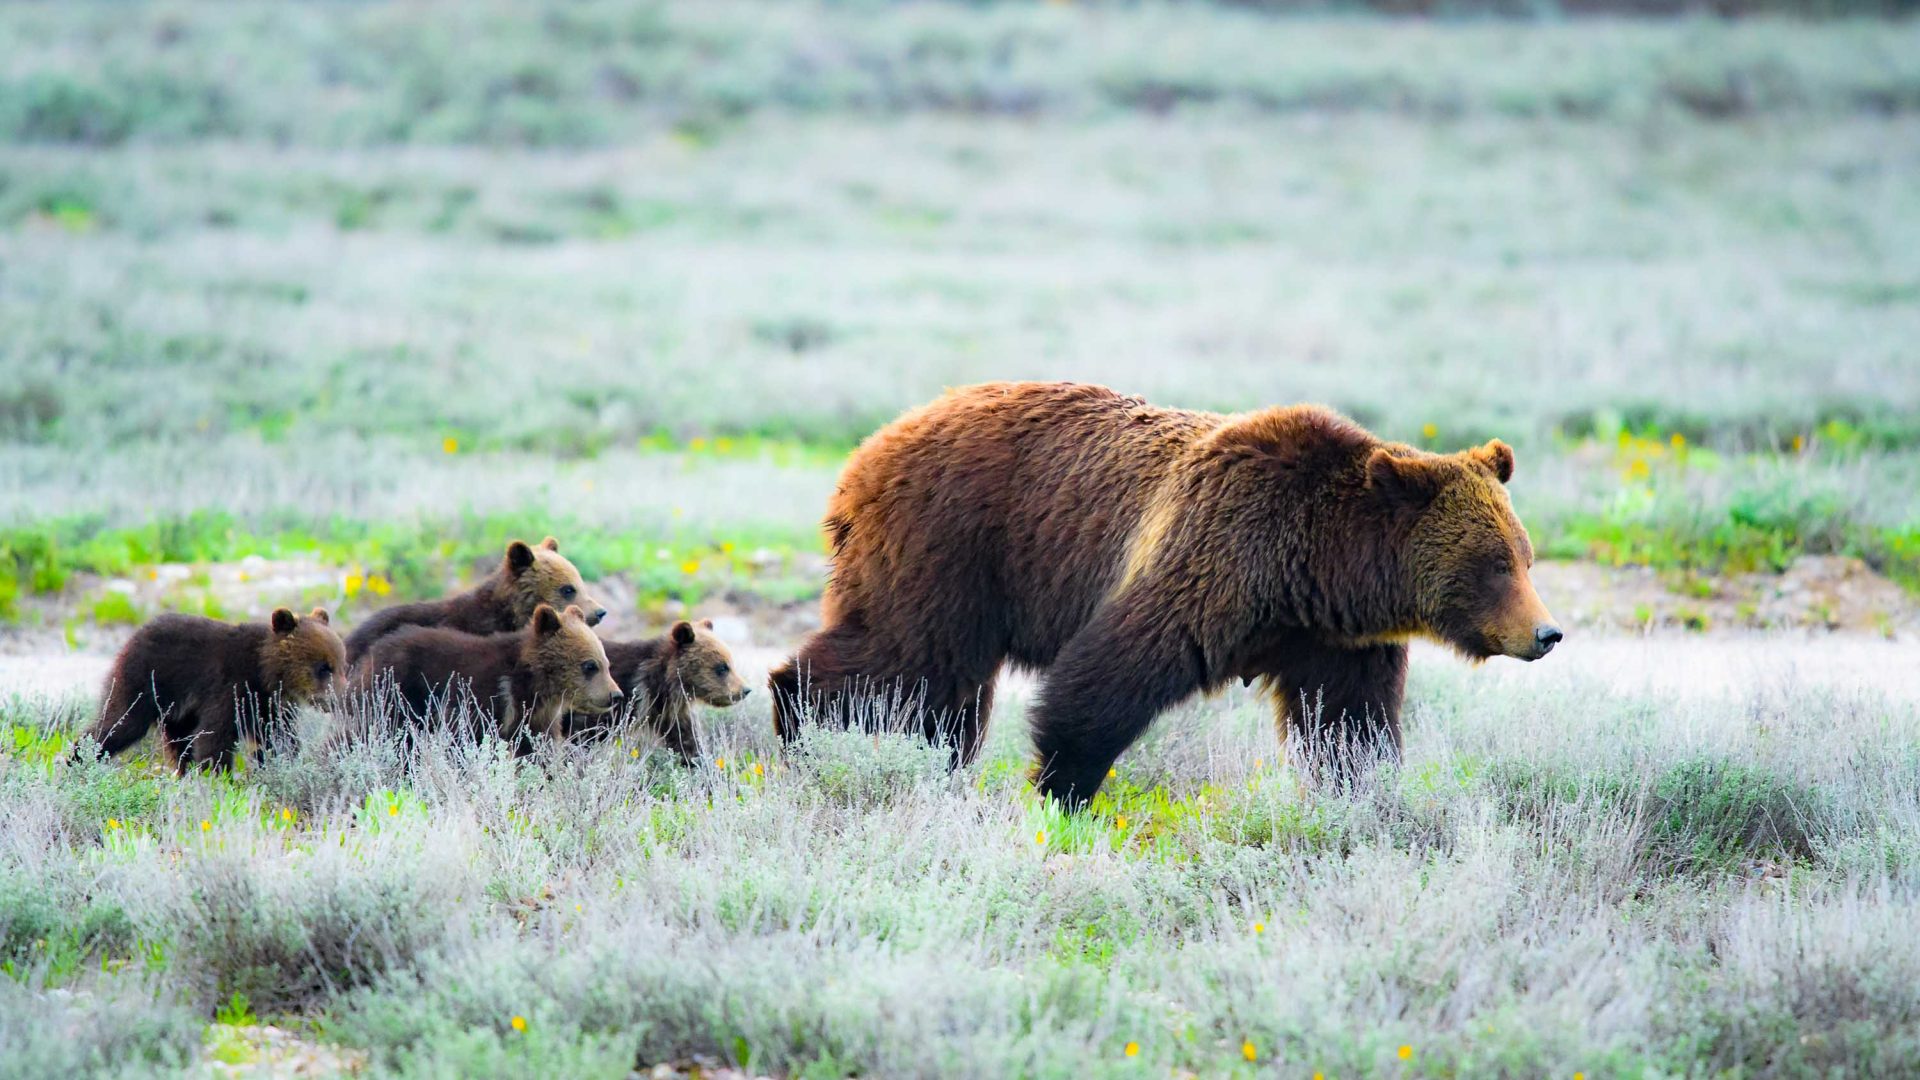 A bear and its cubs walk through green grass.